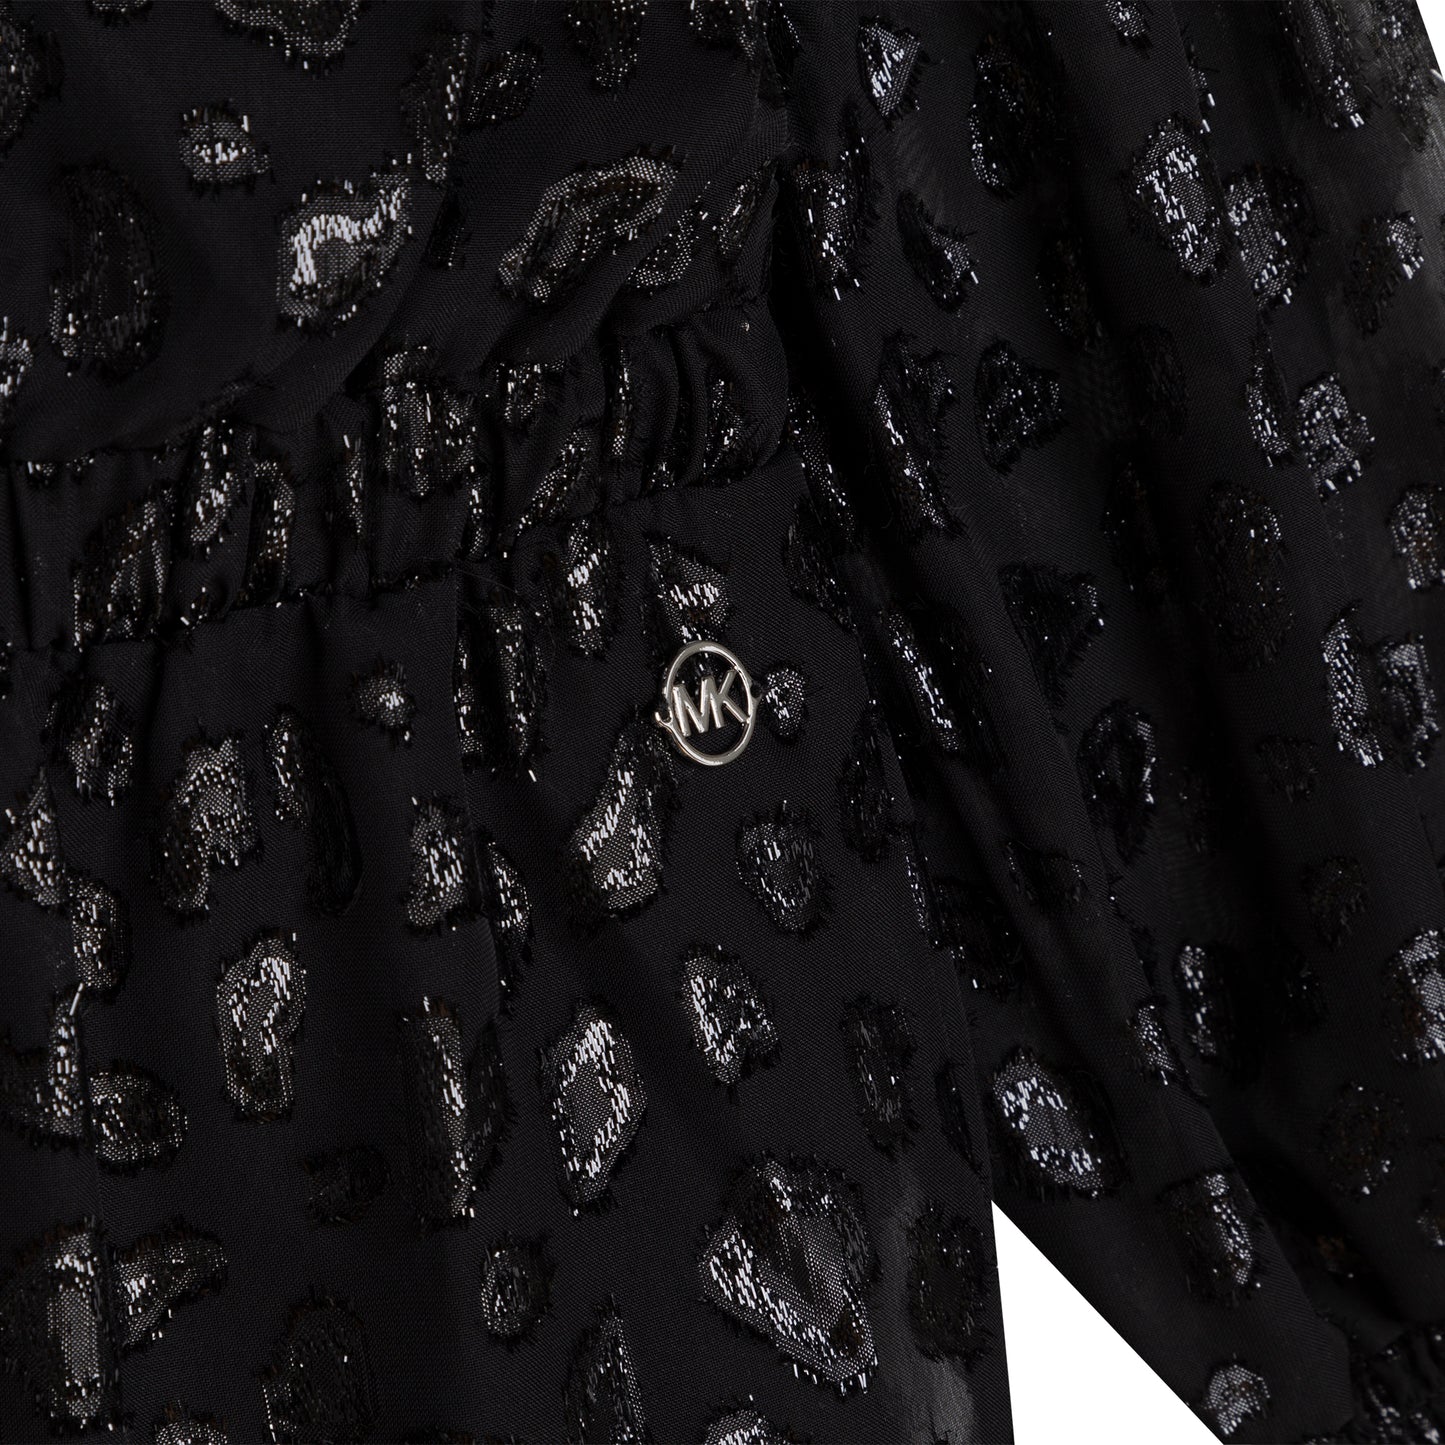 Michael Kors L/S Flounce Dress w/Metallic Pattern _Black R12131-09B